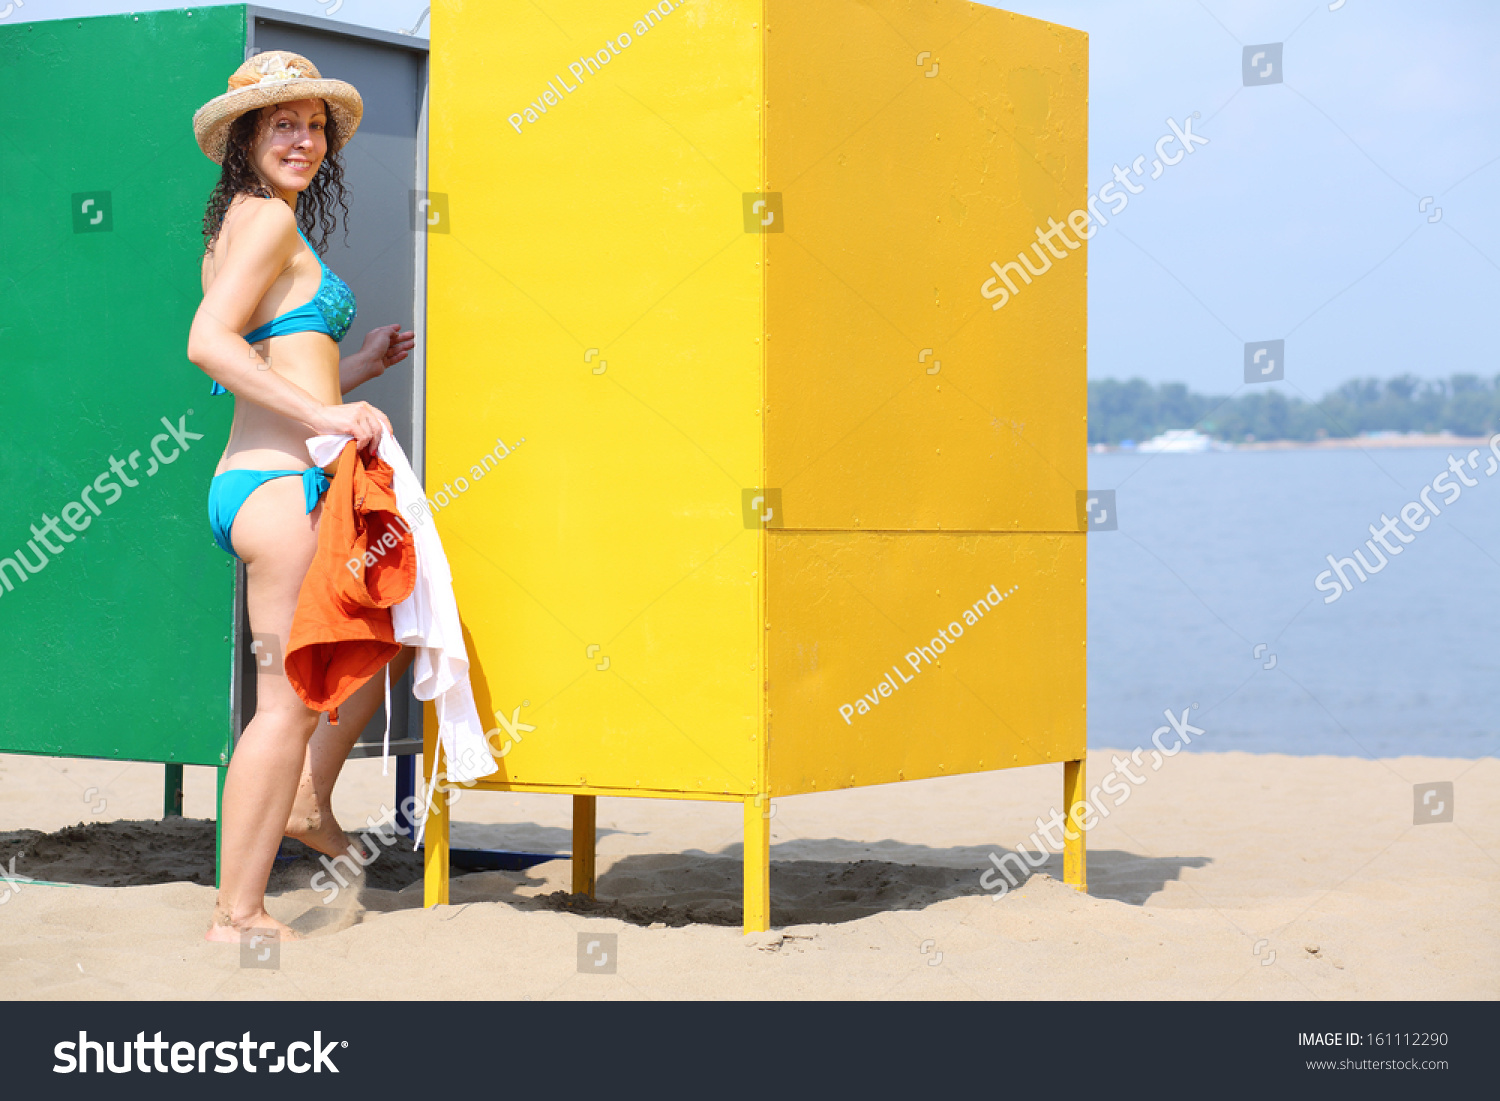 Девица пришла на пляж трахнуться в кабинке для переодевания